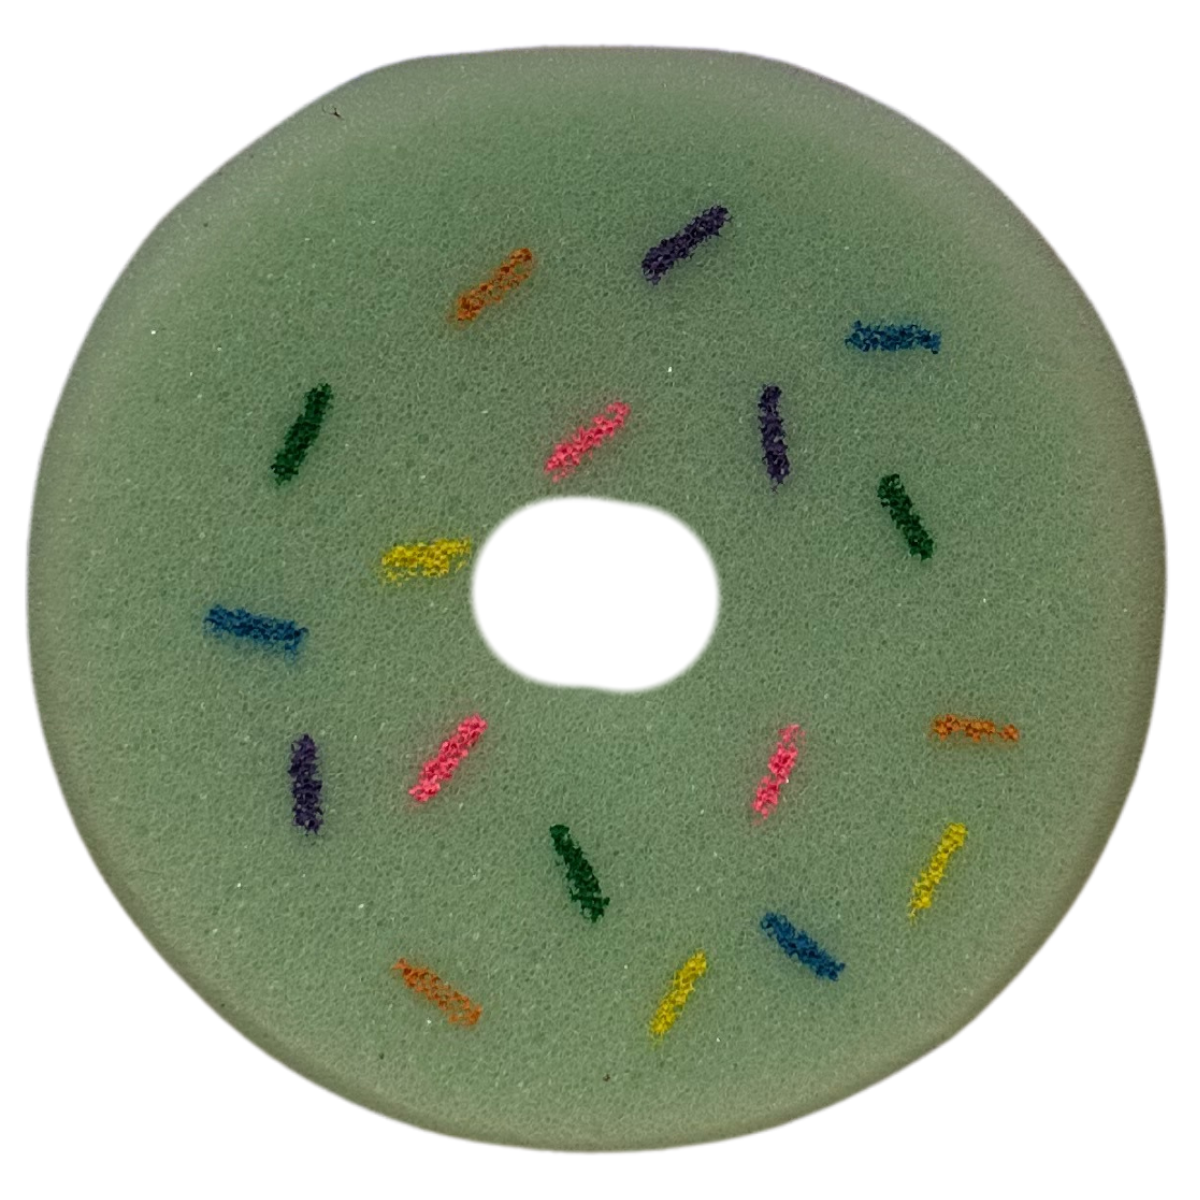 Donut Tack Sponge in Green